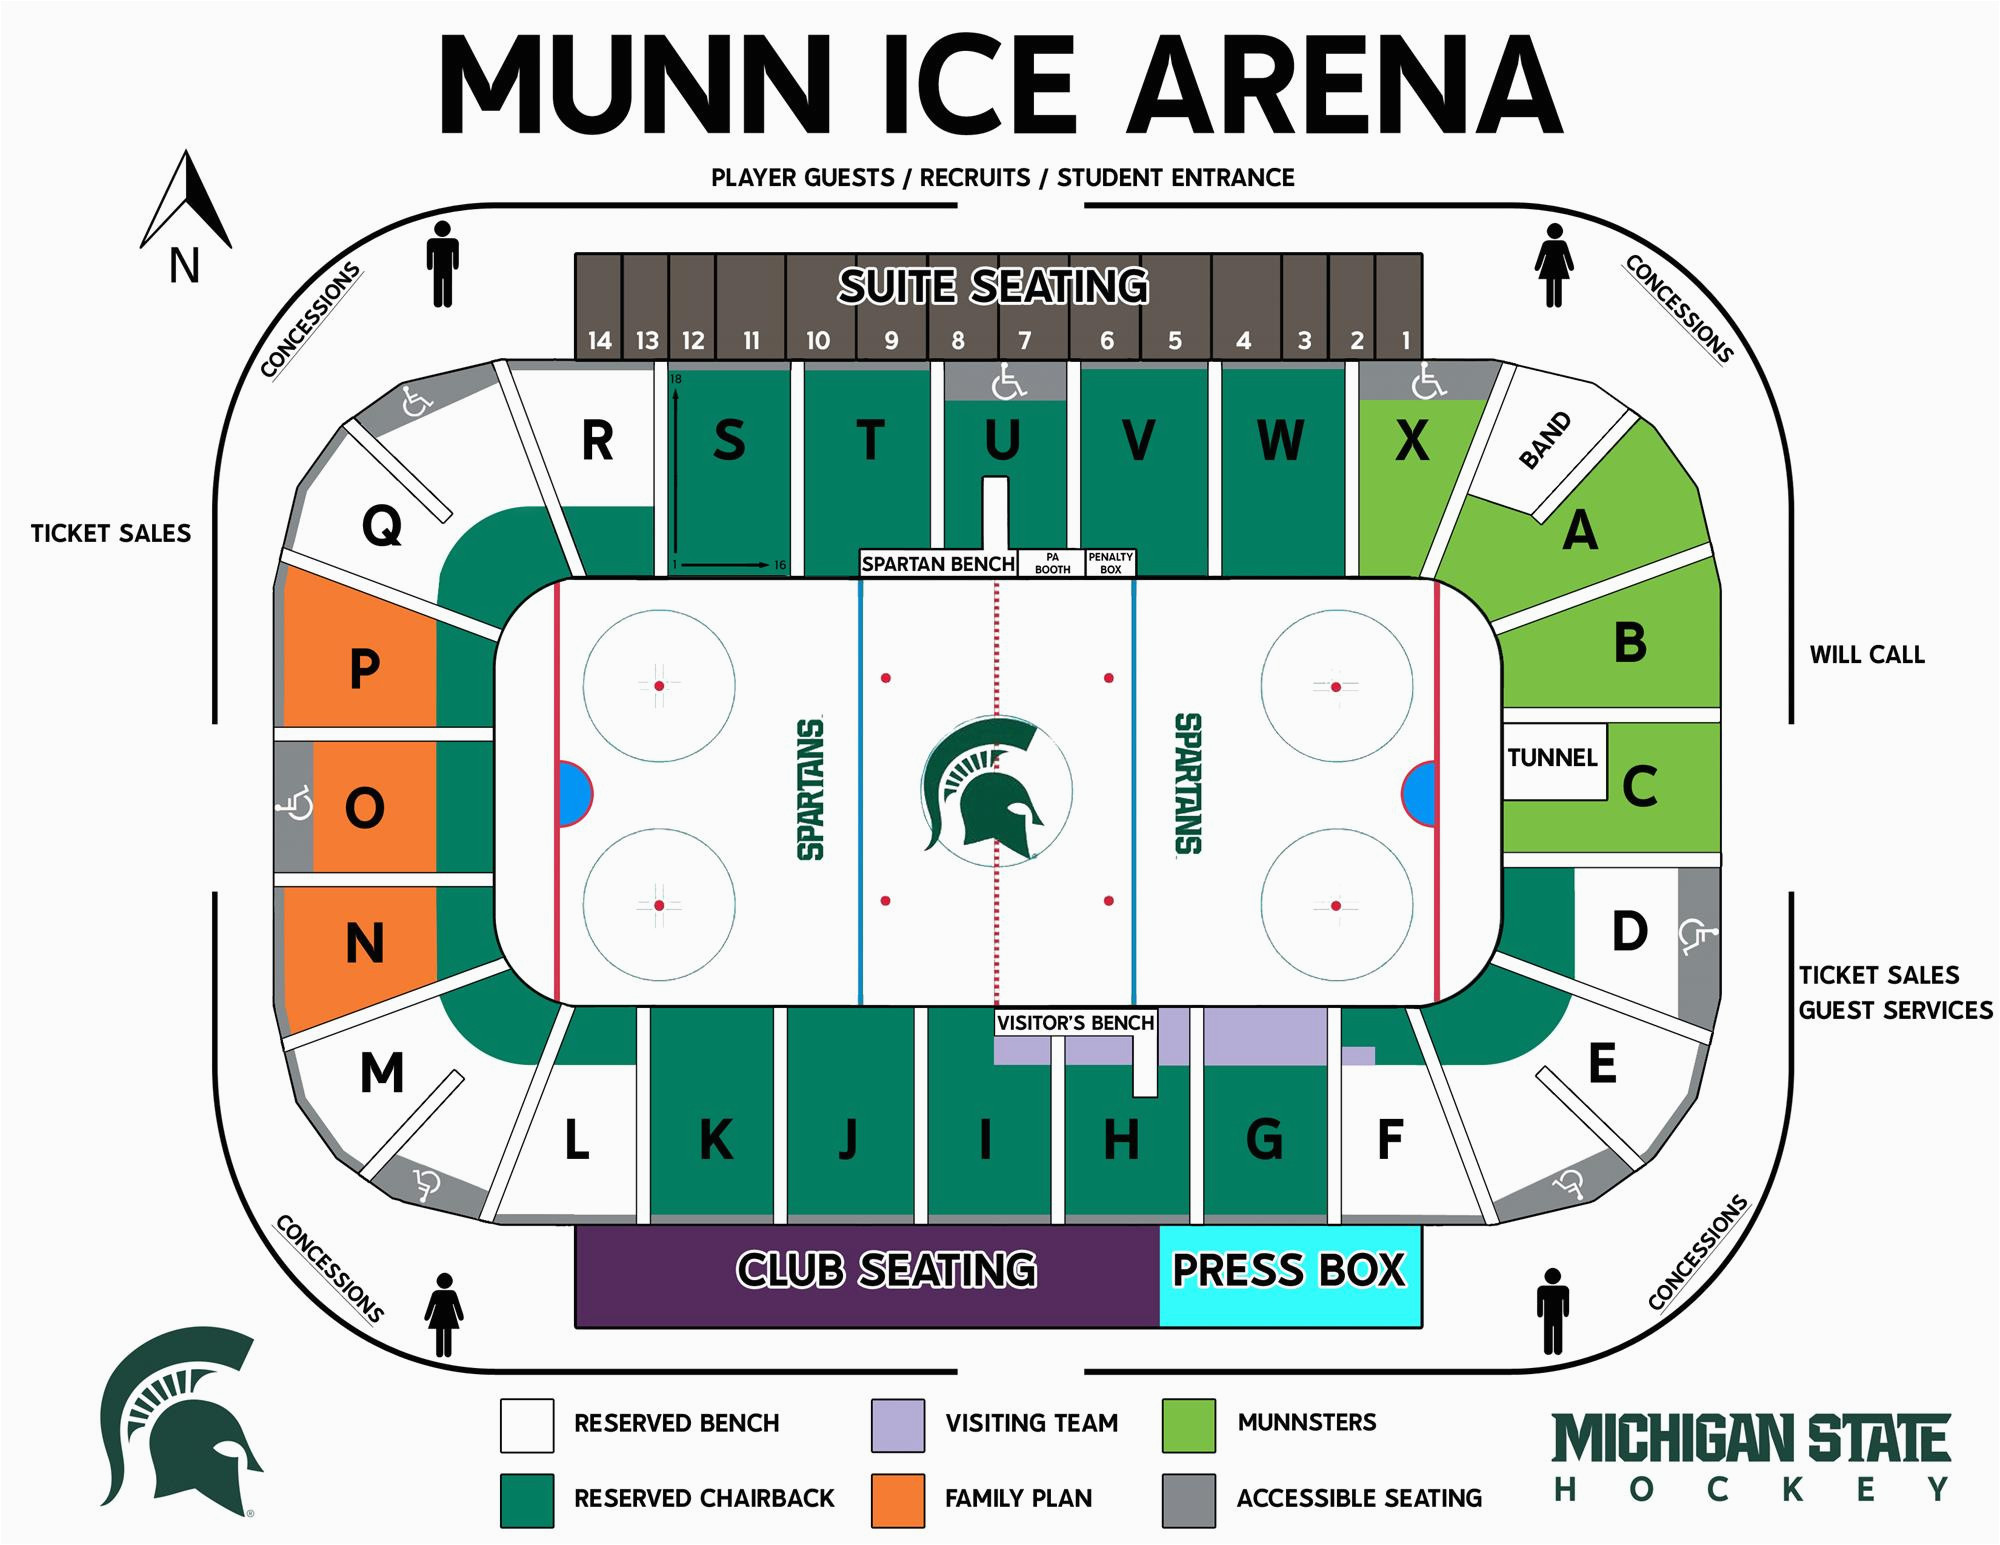 Michigan State Stadium Seating Chart